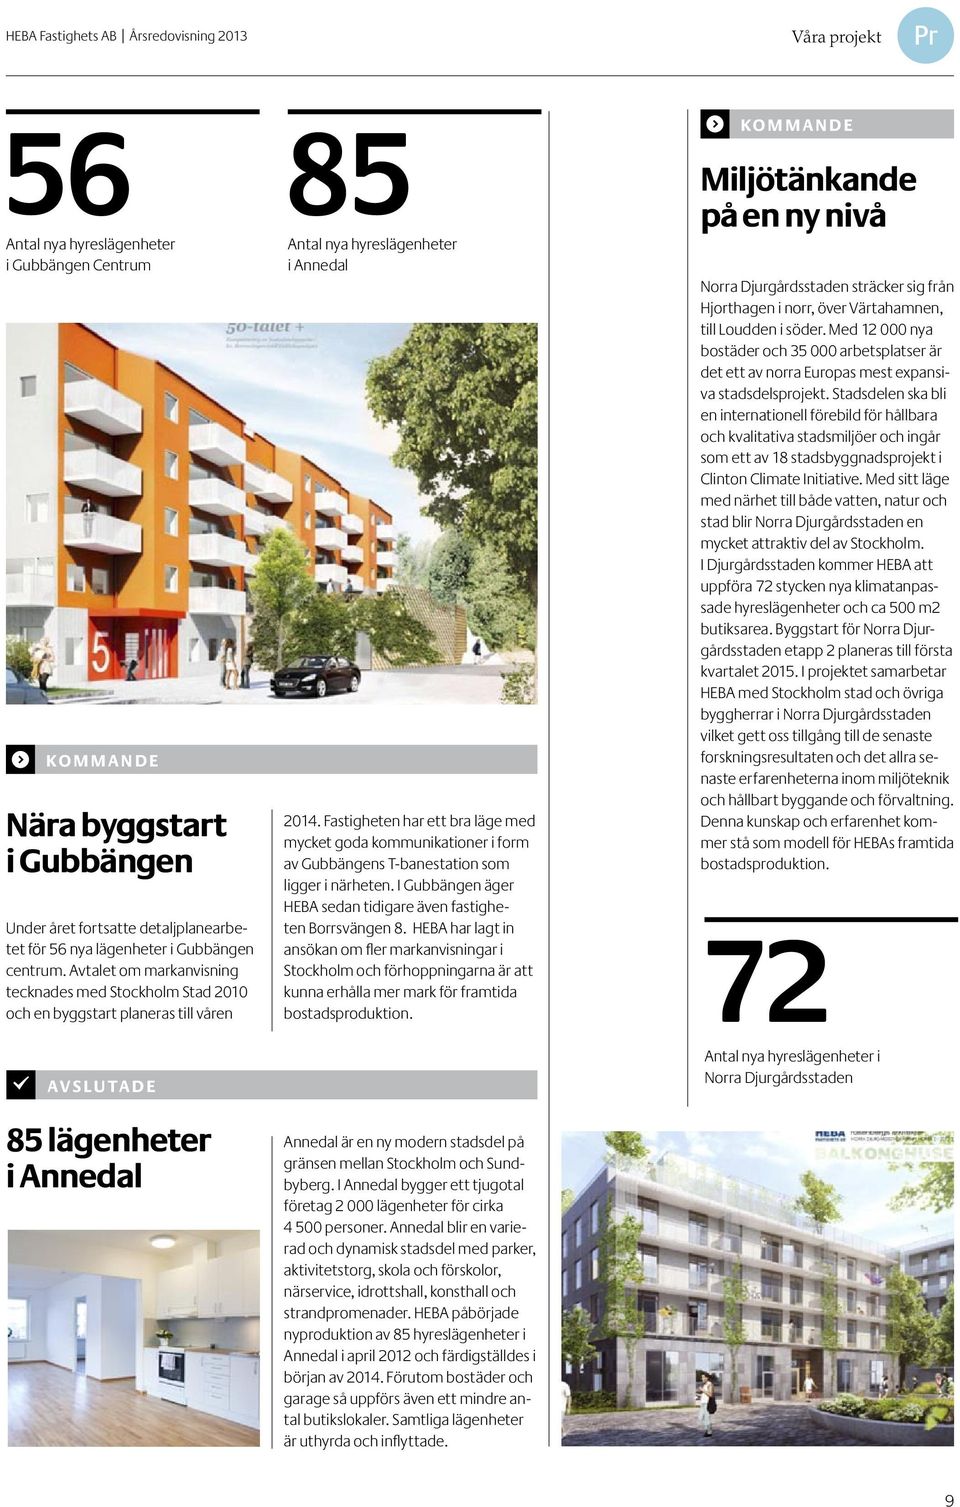 AVSLUTADE 85 lägenheter i Annedal 85 nya hyreslägenheter i Annedal 2014. Fastigheten har ett bra läge med mycket goda kommunikationer i form av Gubbängens T-banestation som ligger i närheten.